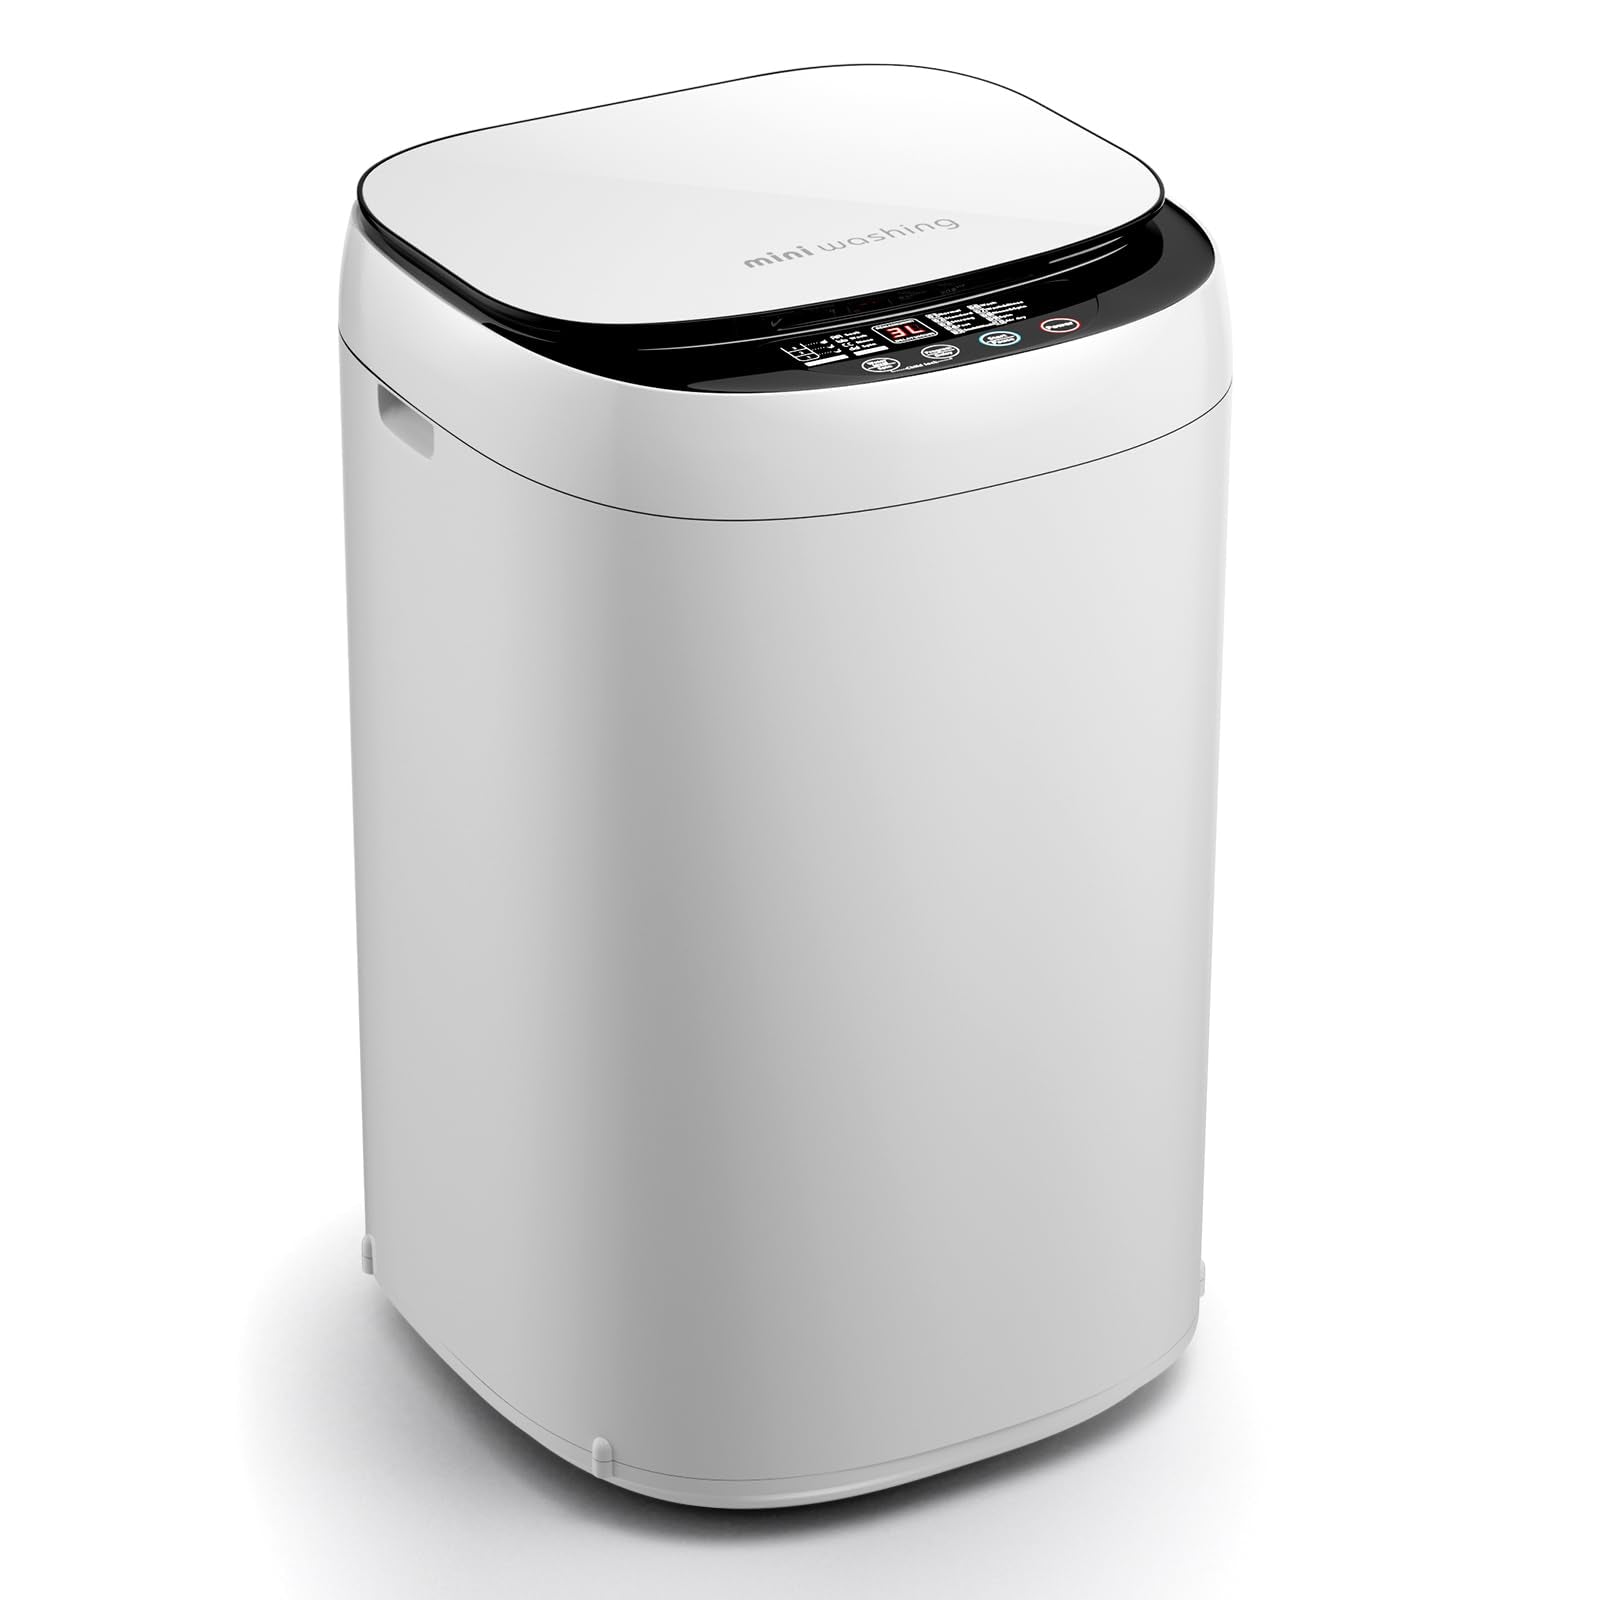 Portable Mini Compact Twin Tub Washing Machine - Giantex – Giantexus